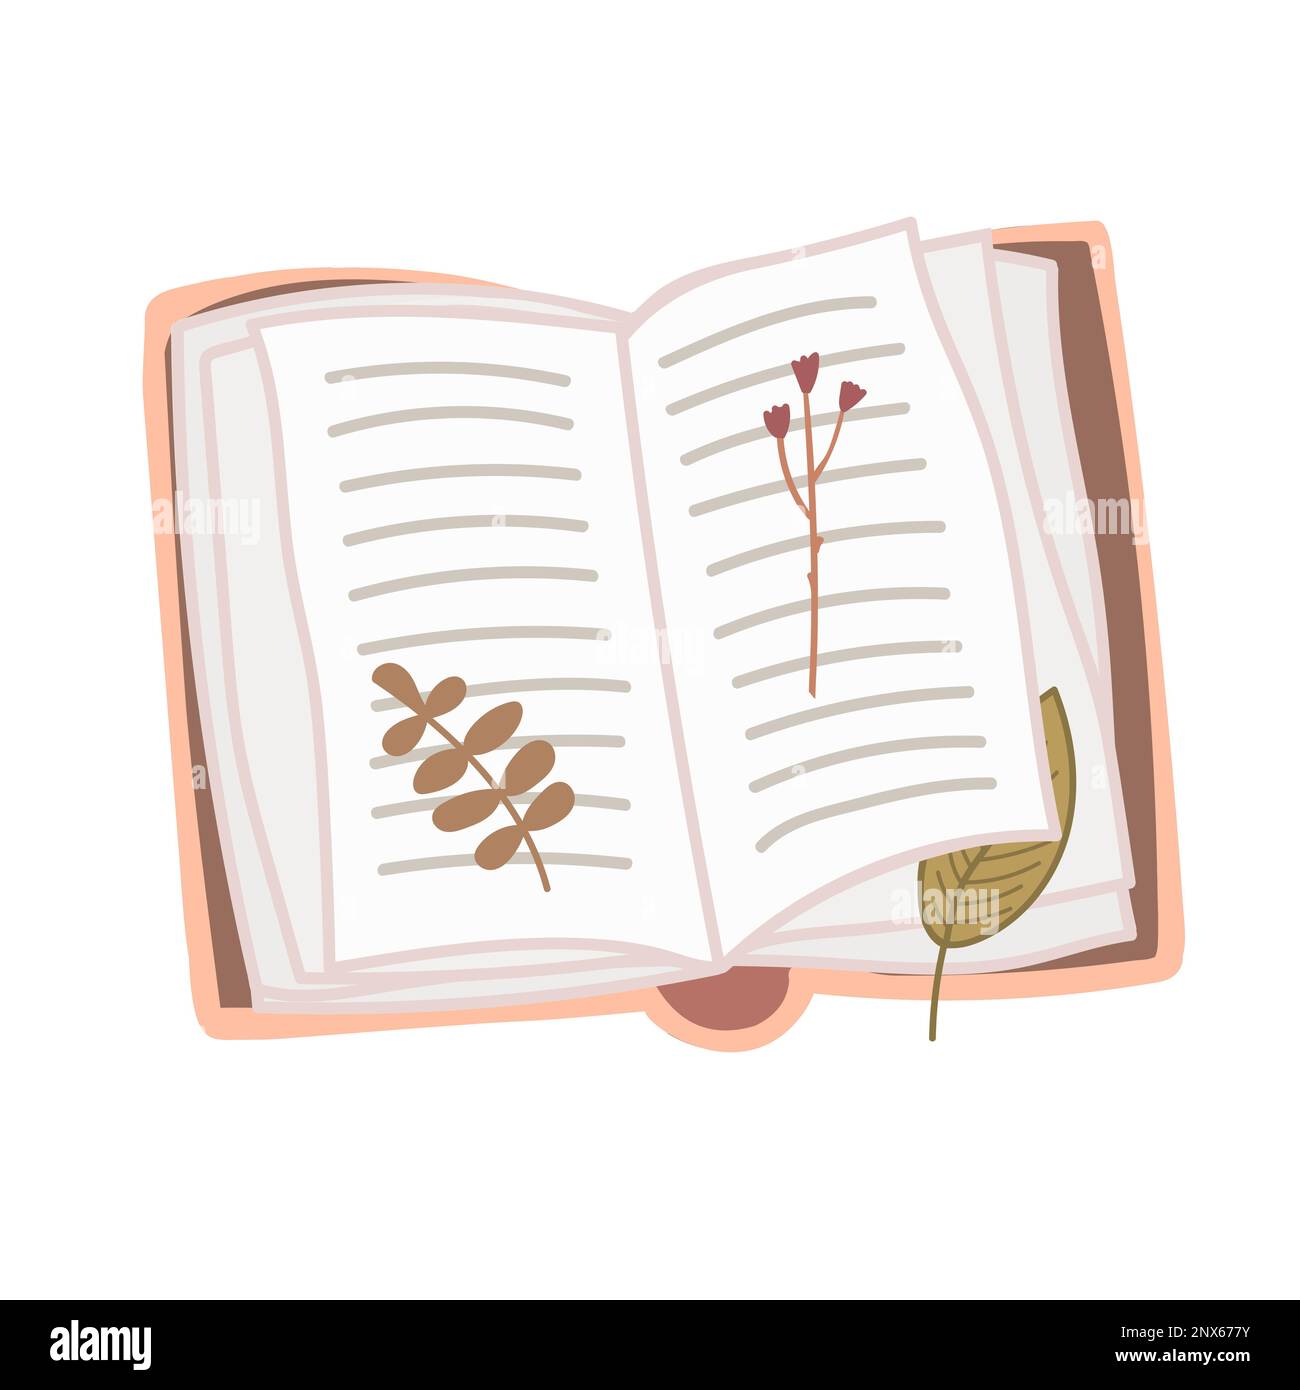 Vieux livre ouvert vintage avec des feuilles séchées et des fleurs isolées sur fond blanc. Illustration vectorielle dessinée à la main Illustration de Vecteur